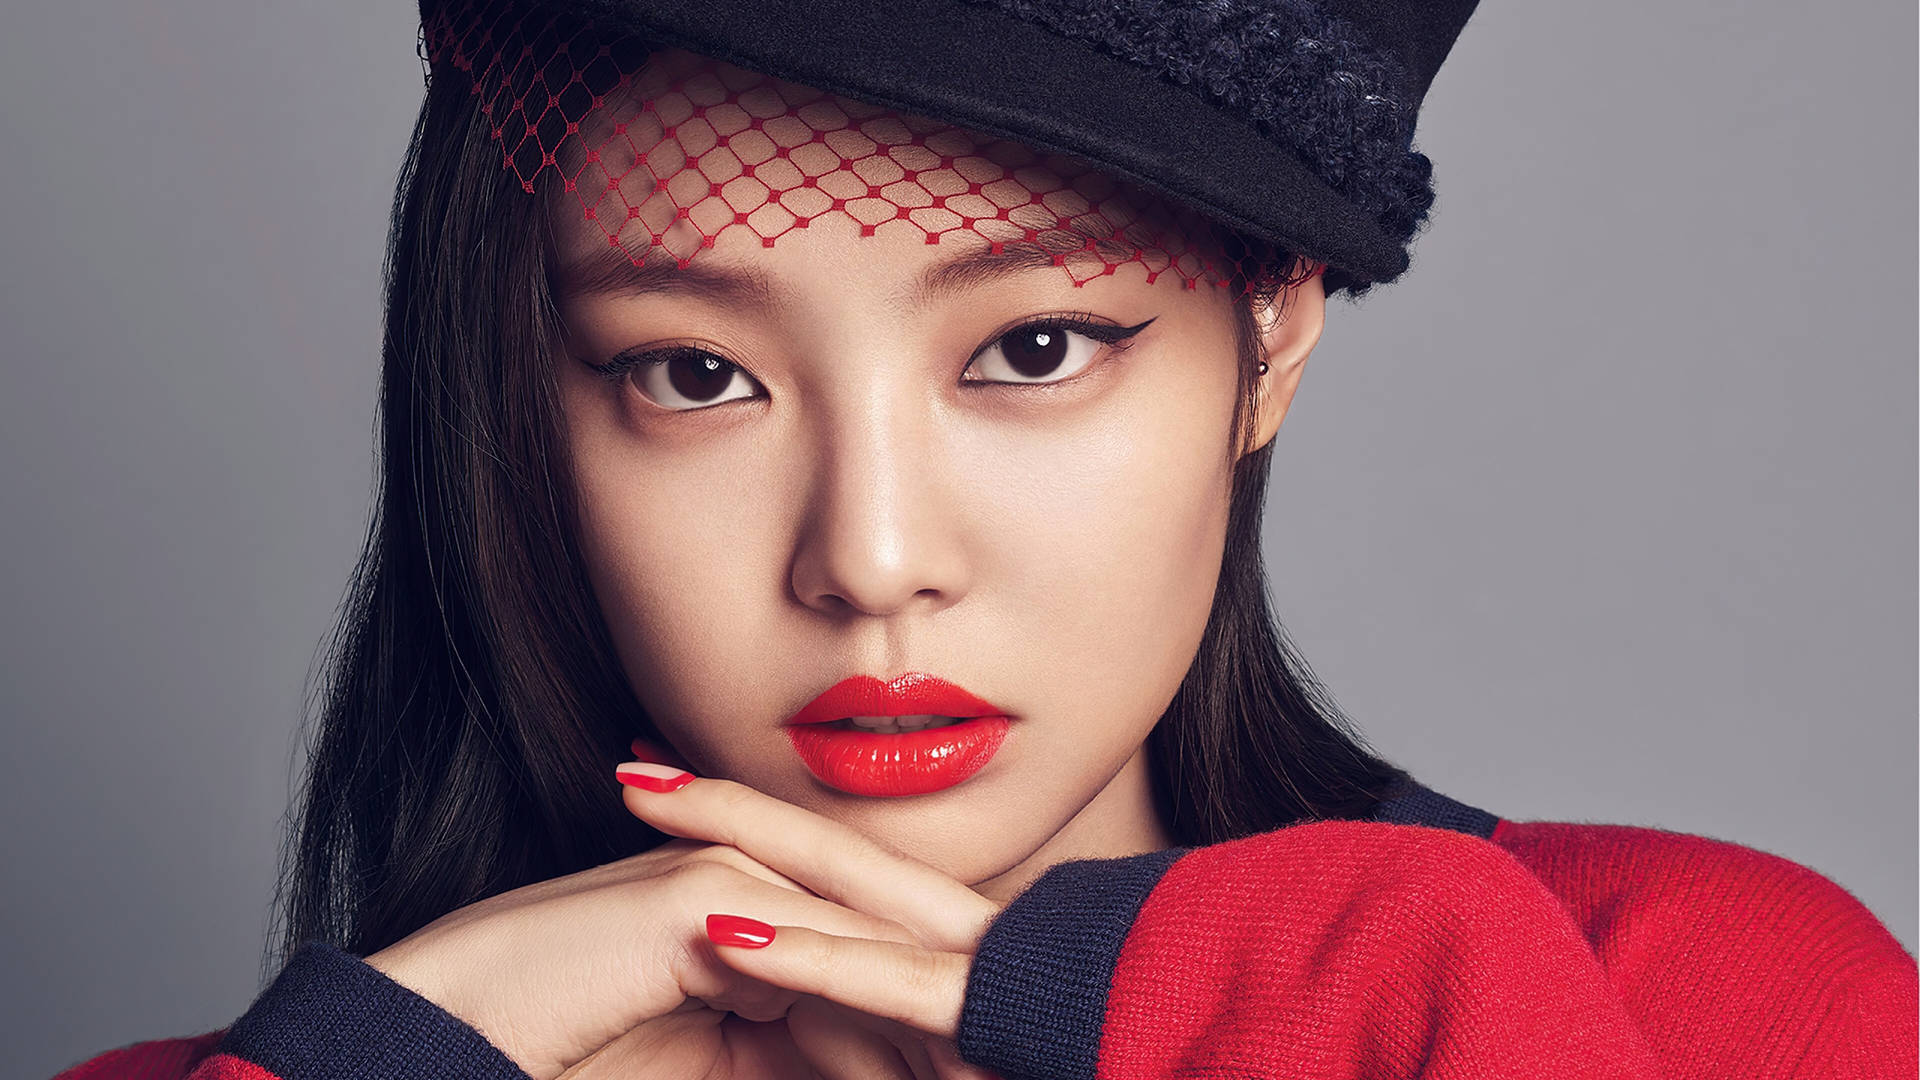 Jennie Kim On Red Stylish Look Background